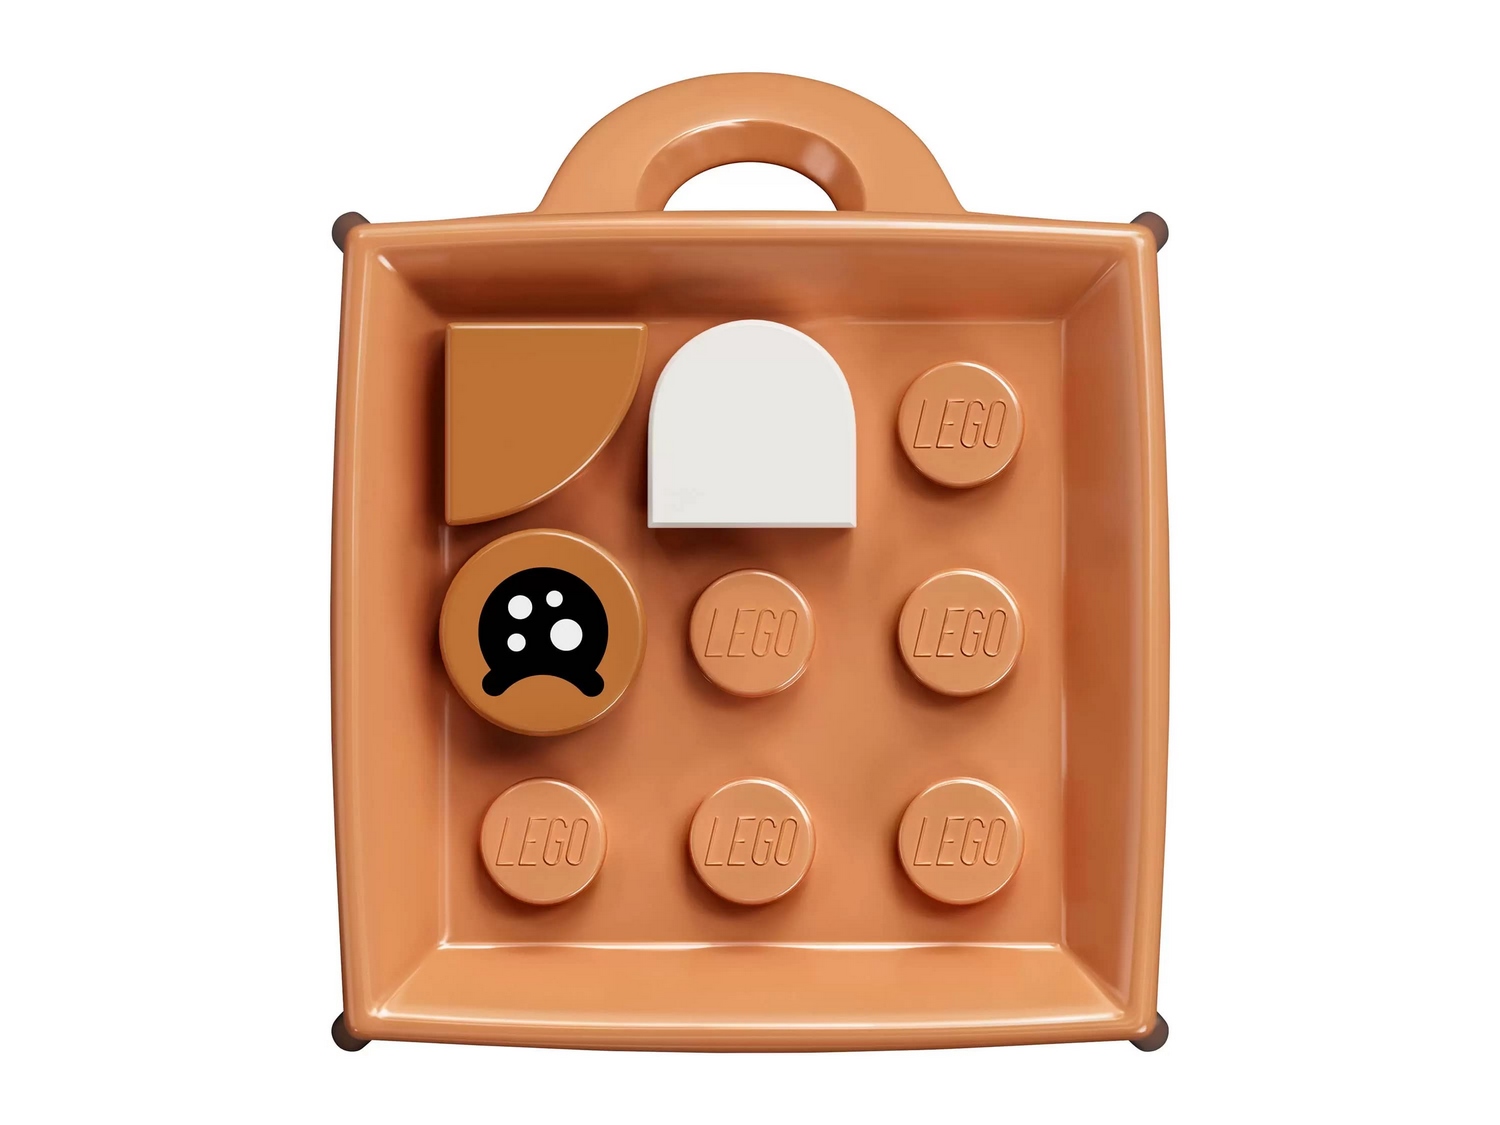 Набор для поделок LEGO Dots «Брелок Щенок» 41927 / 84 детали